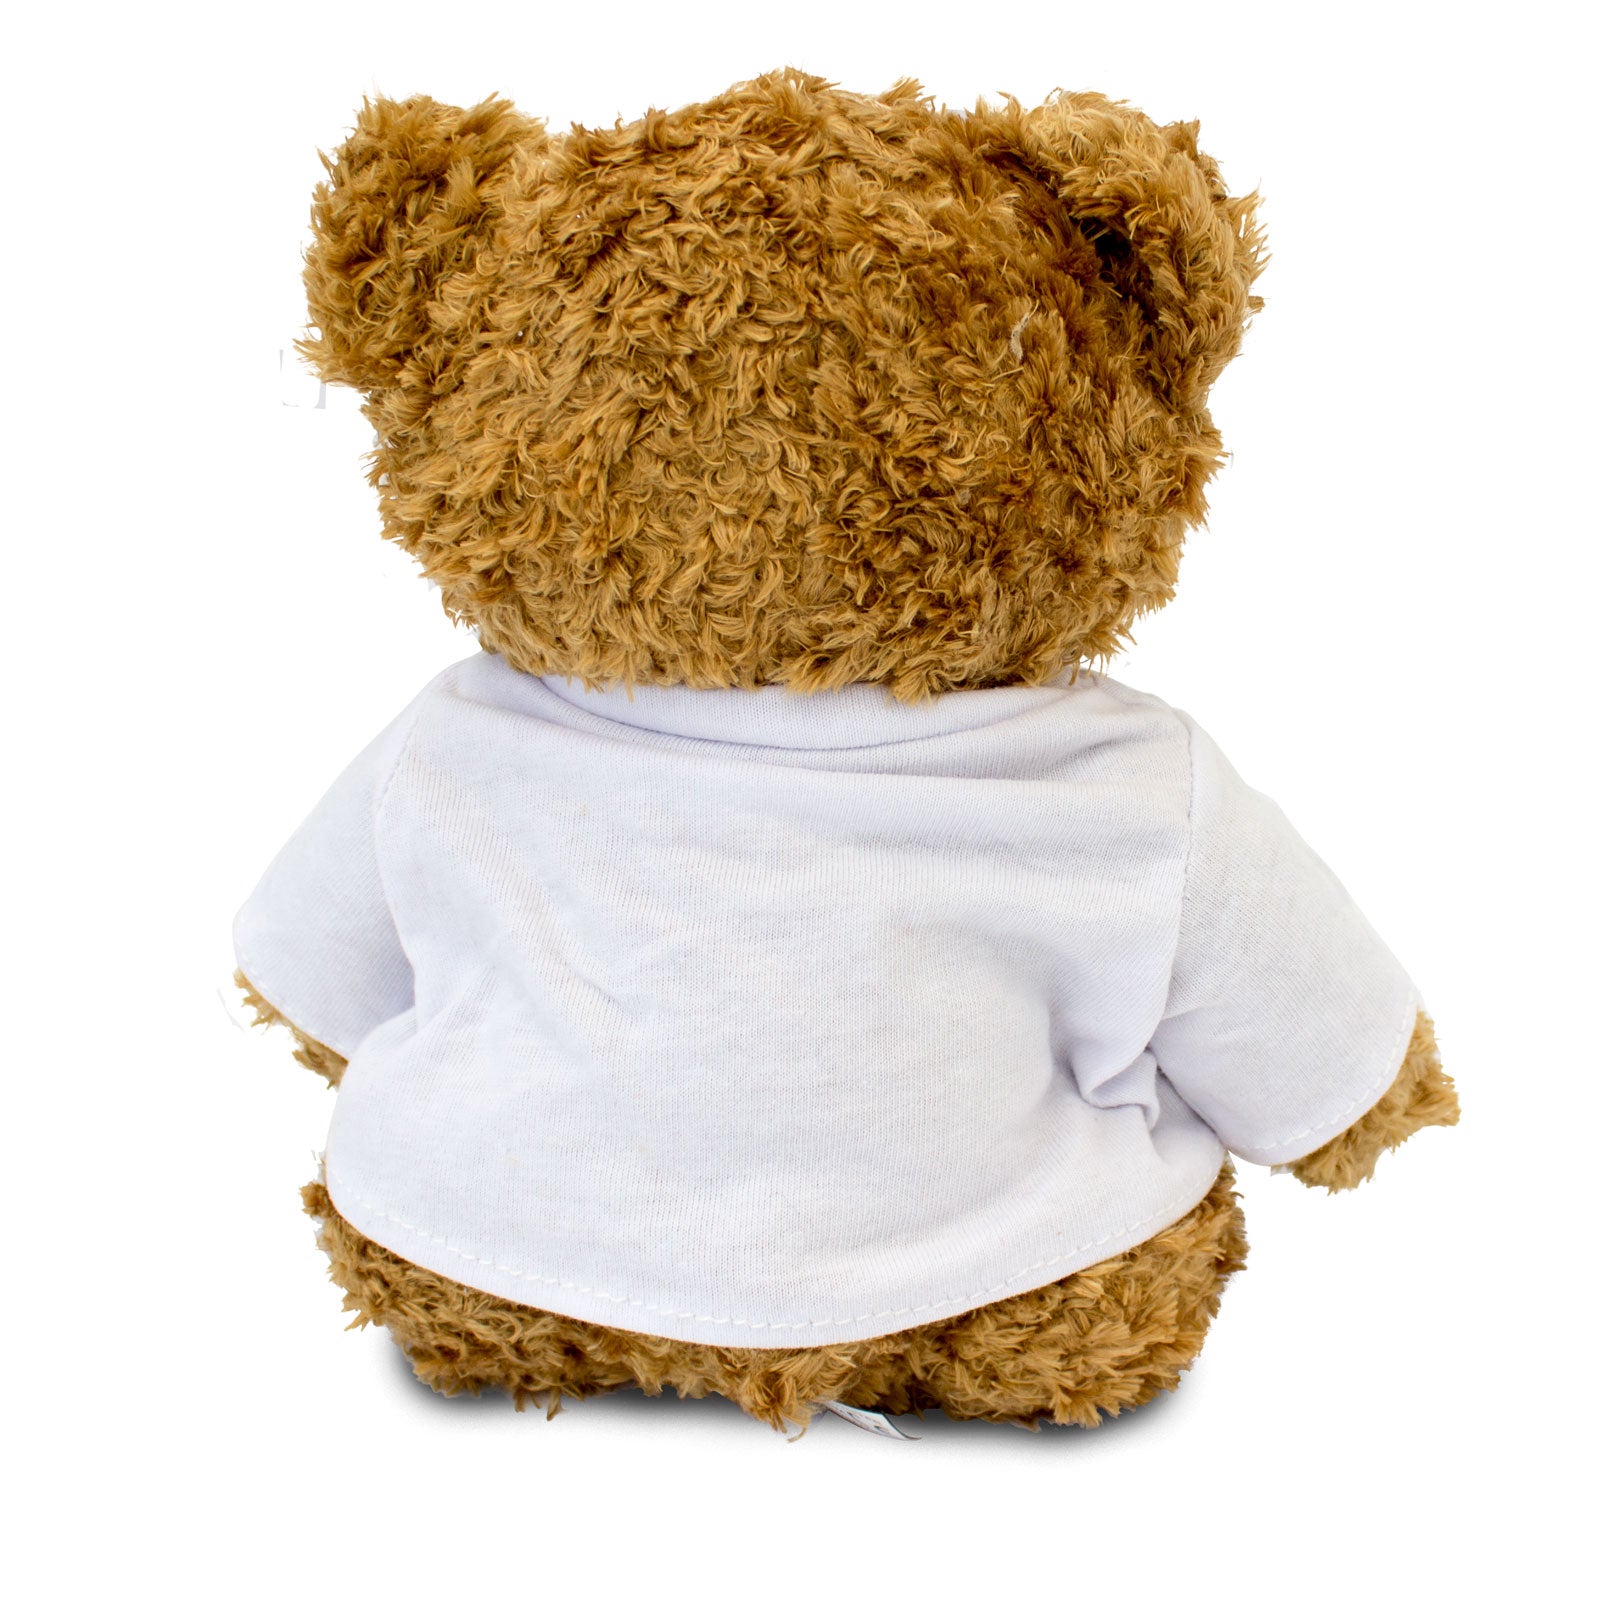 The Greatest Mummy Ever - Teddy Bear